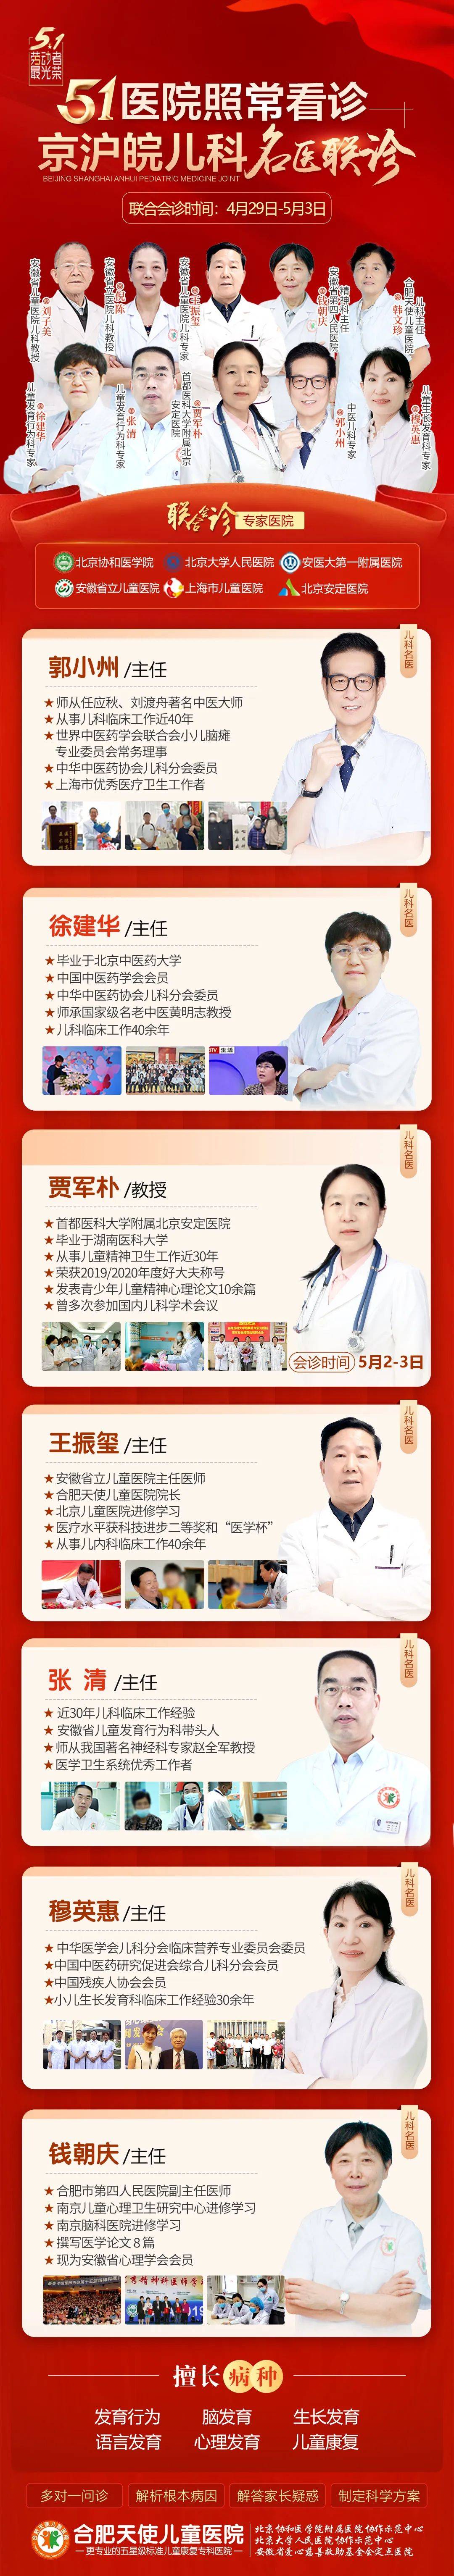 合肥天使兒童醫院五一期間特邀北京安定醫院賈軍樸